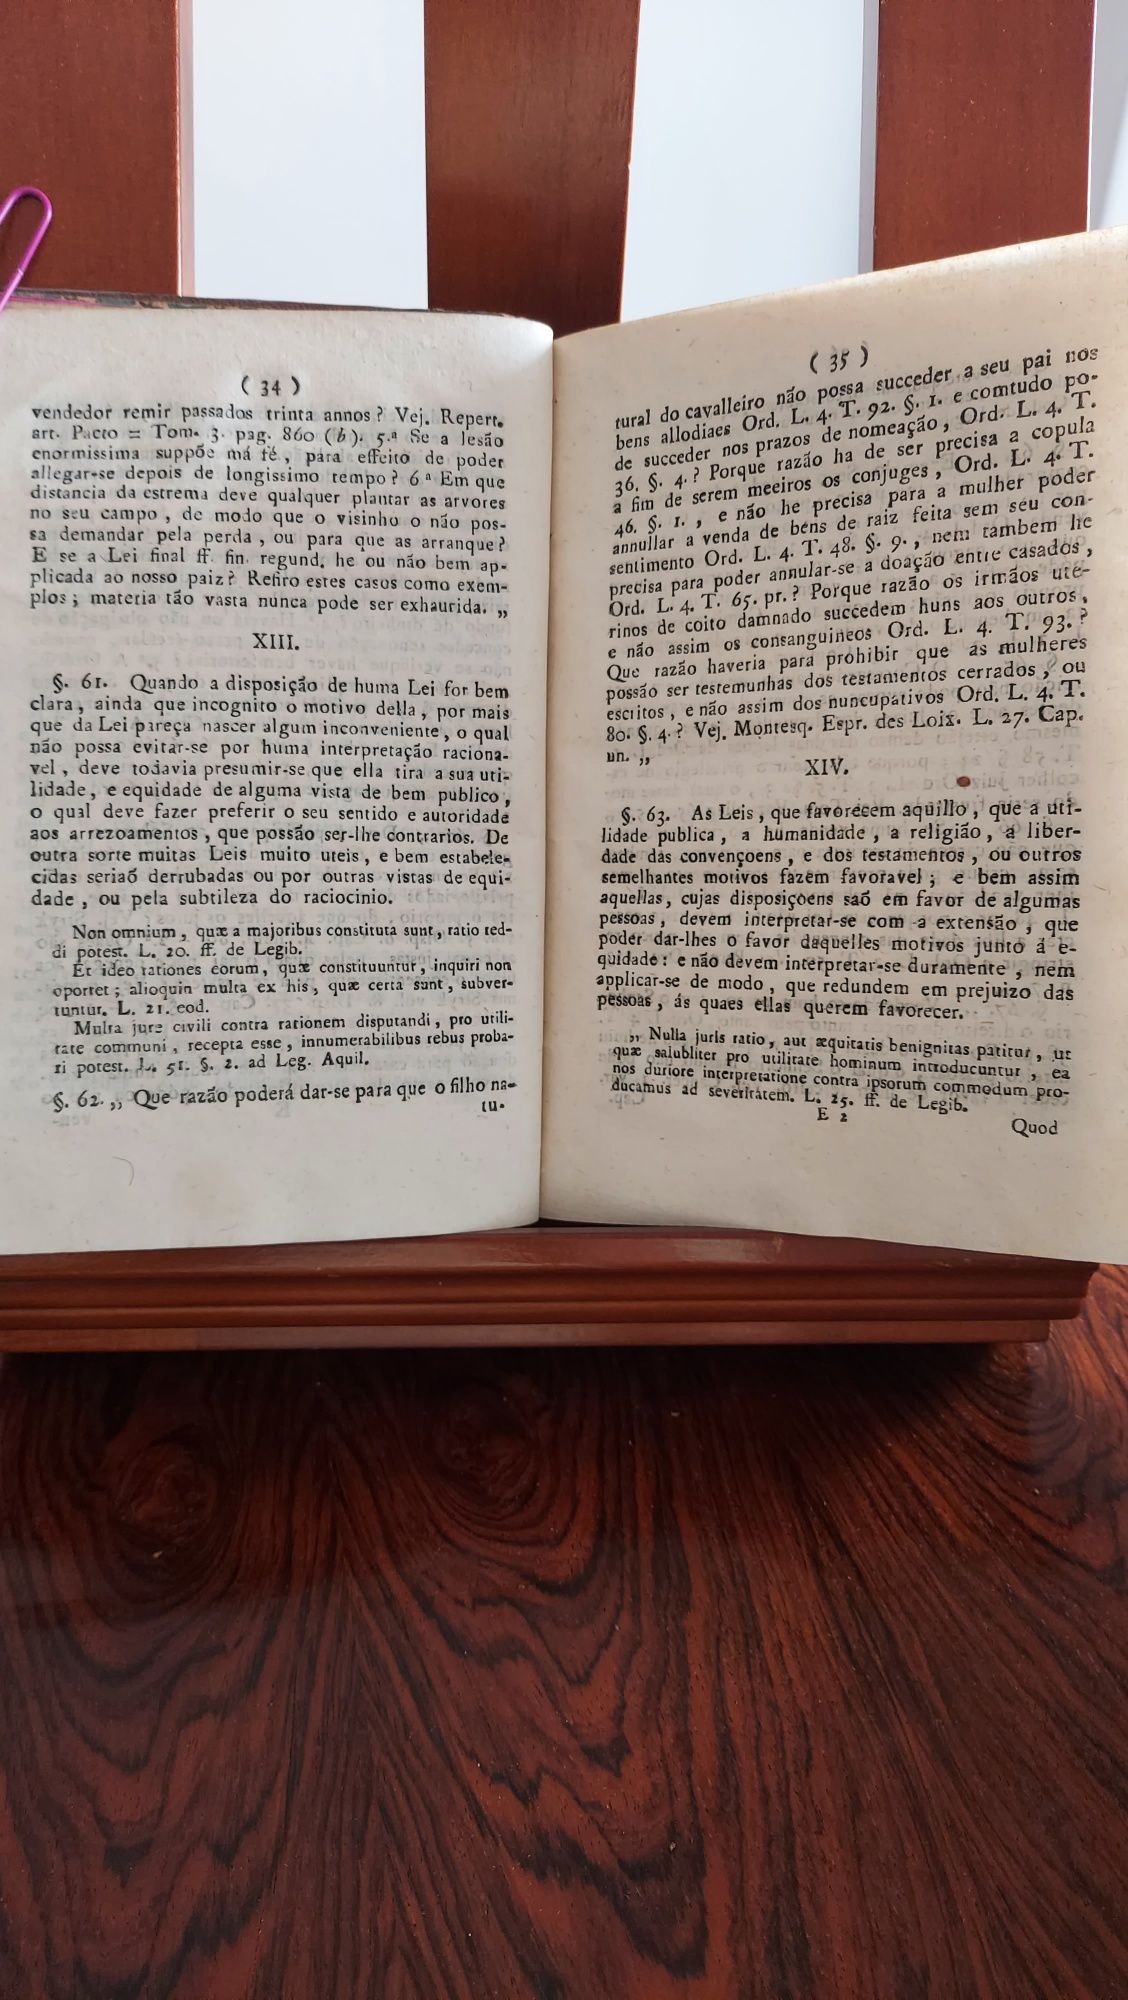 Theoria da Interpretação das Leis, Lisboa, Typografia Lacerdina, 1815